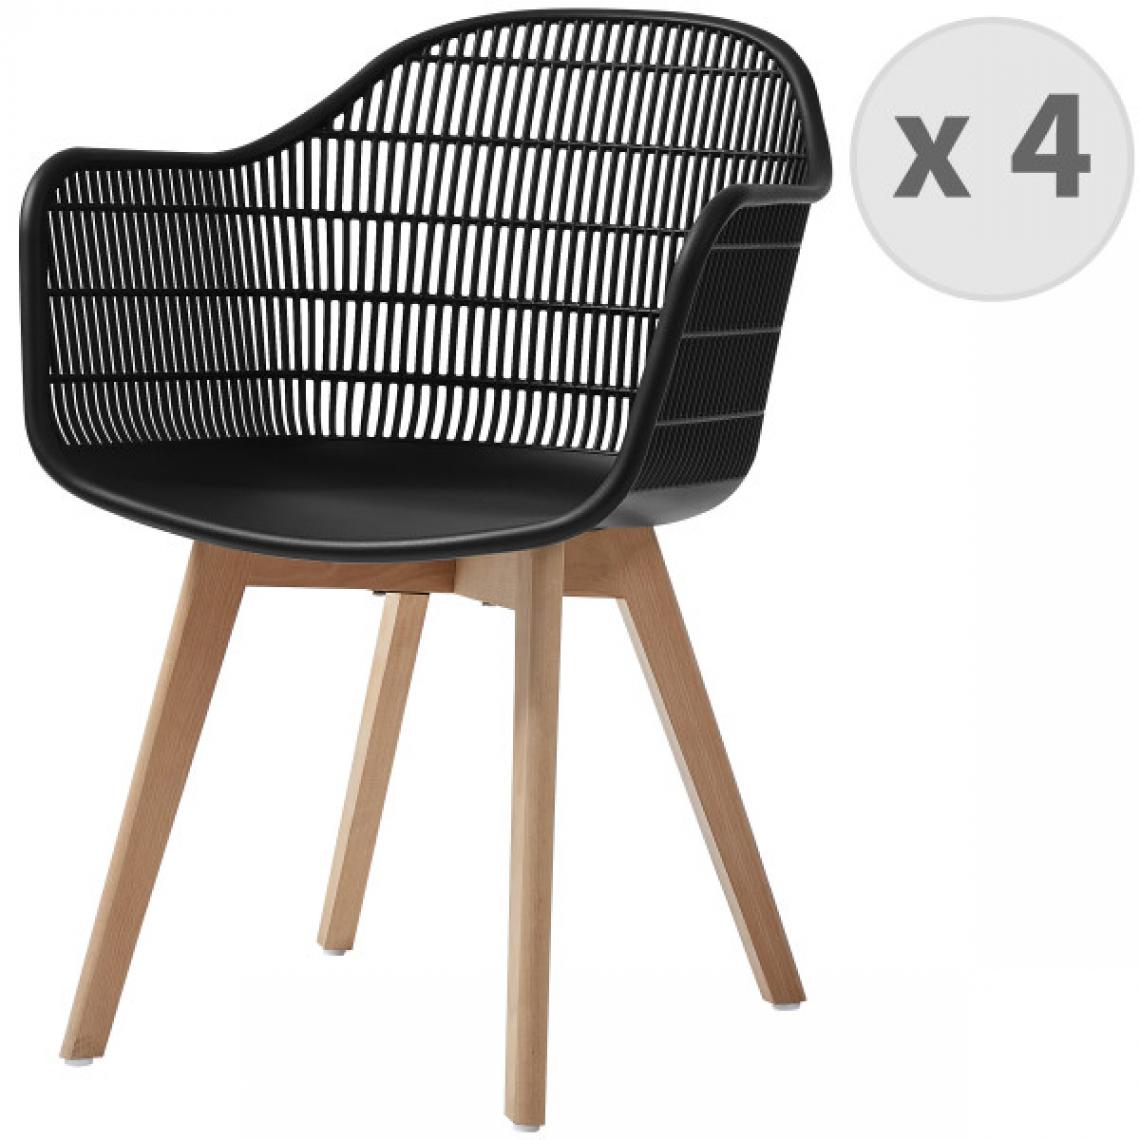 Moloo - MERIDA-Chaise scandinave noir pieds hêtre (x4) - Chaises